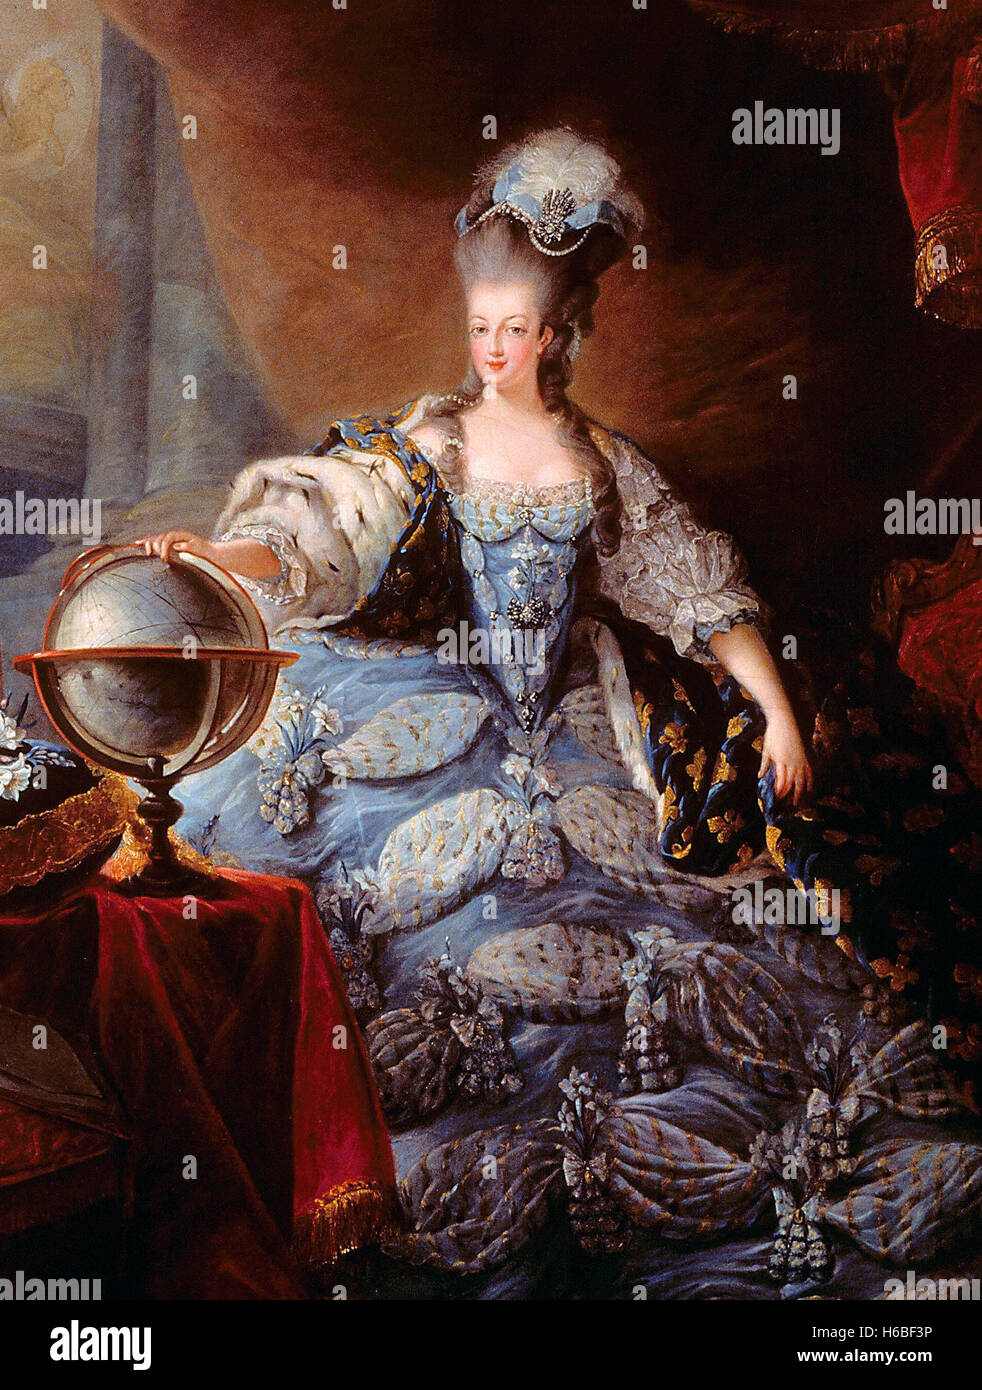 Marie Antoinette (1755-1793), Königin von Frankreich und Ehefrau von König Louis XVI. Porträt von Jean-Baptiste André Gautier-Dagoty, Öl auf Leinwand, 1775 Stockfoto